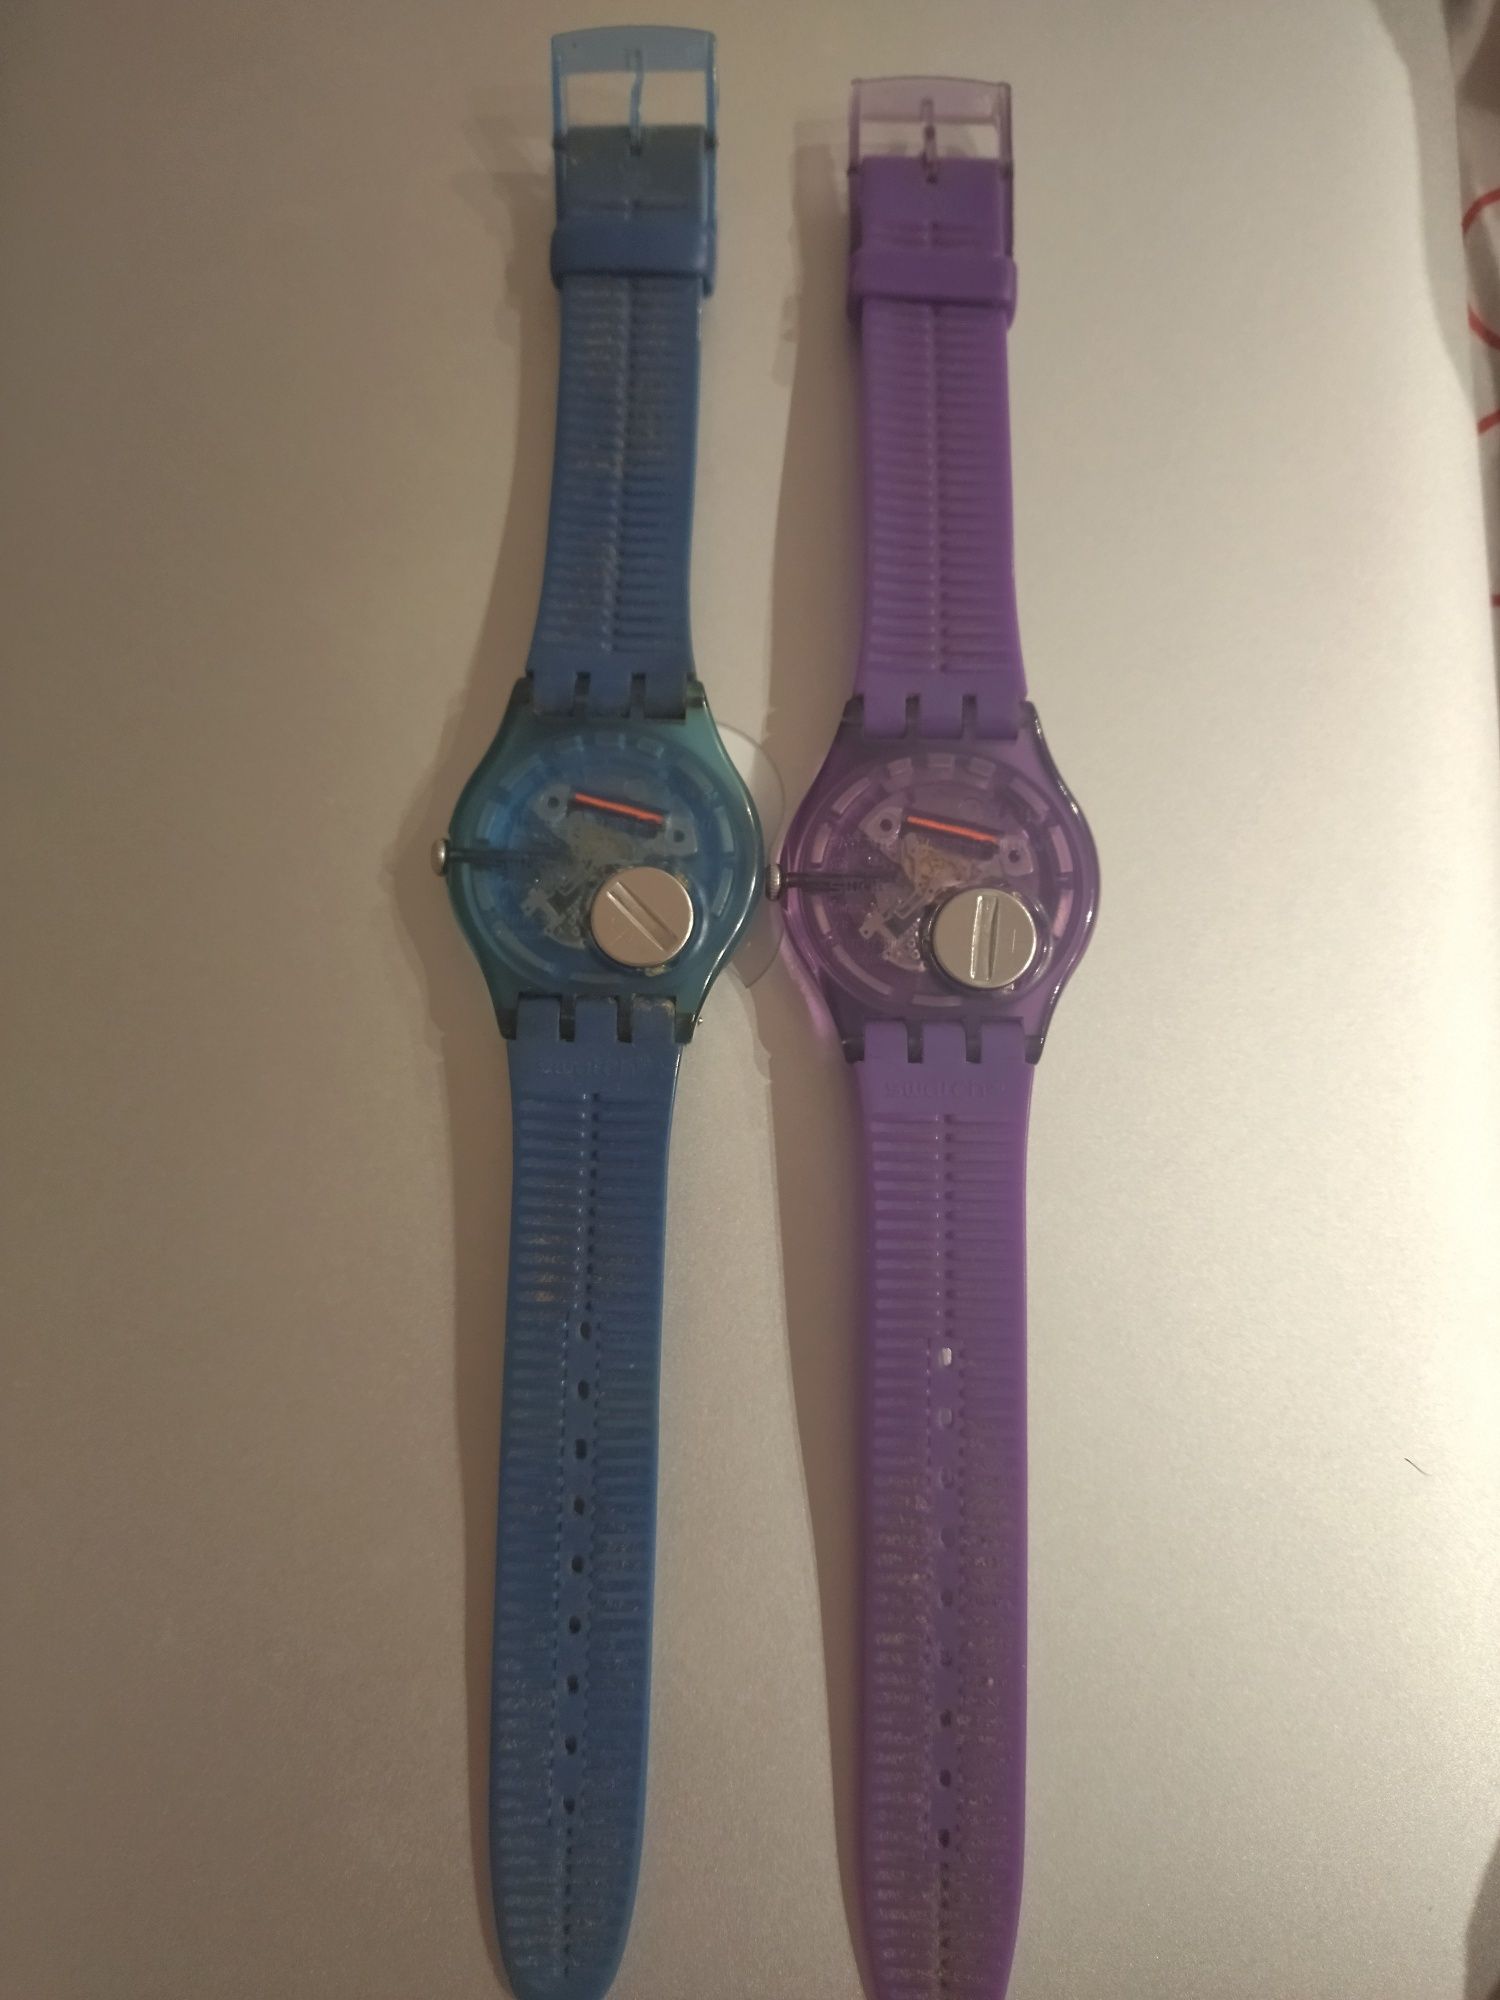 2 relógios da marca Swatch